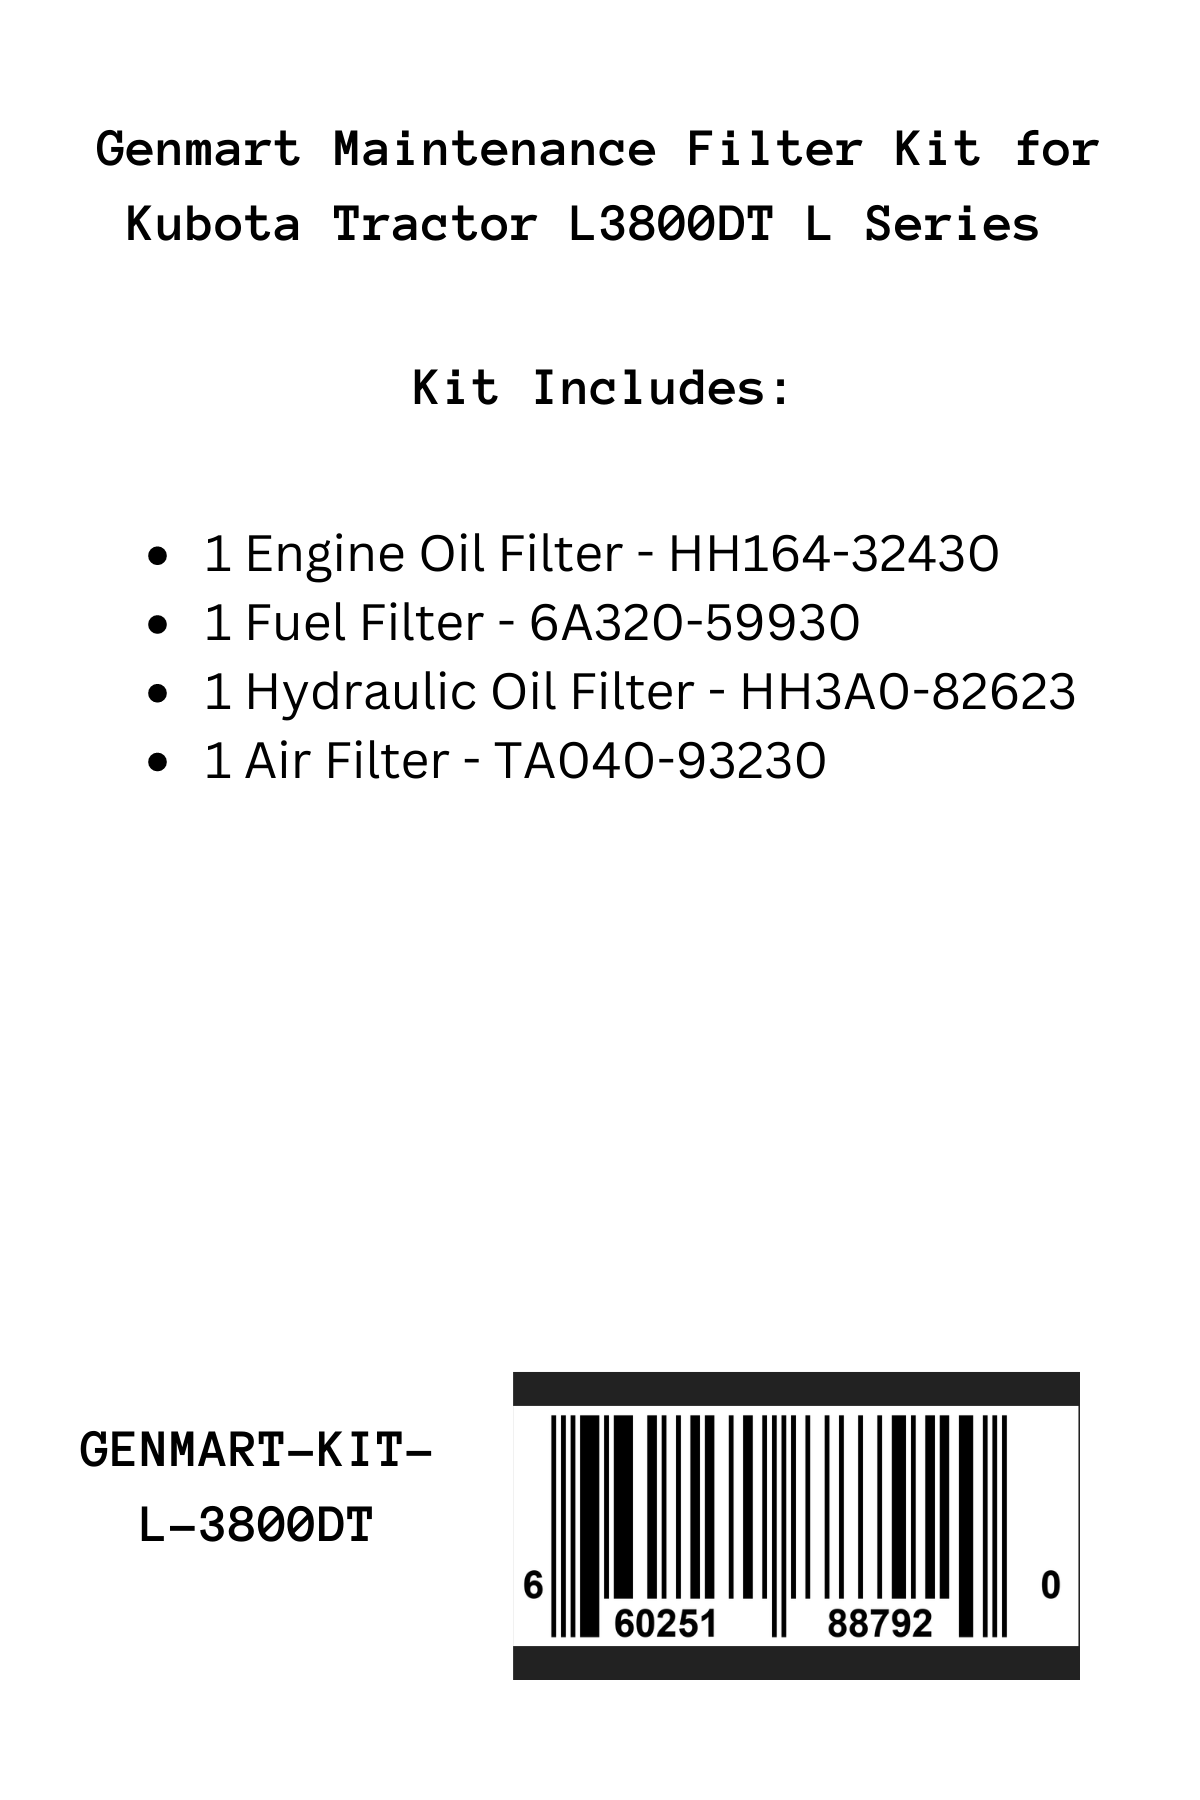 Genmart Maintenance Kit for Kubota Tractor L3800DT L Series